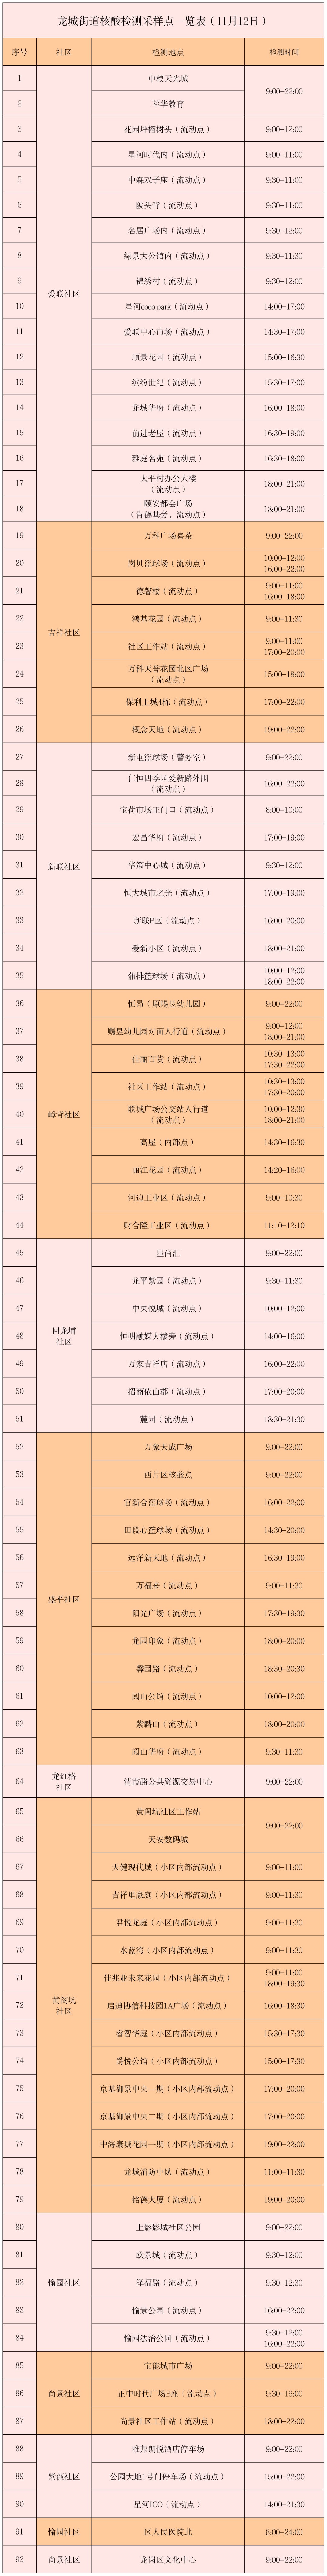 11月12日龙岗区龙城街道核酸检测采样点一览表